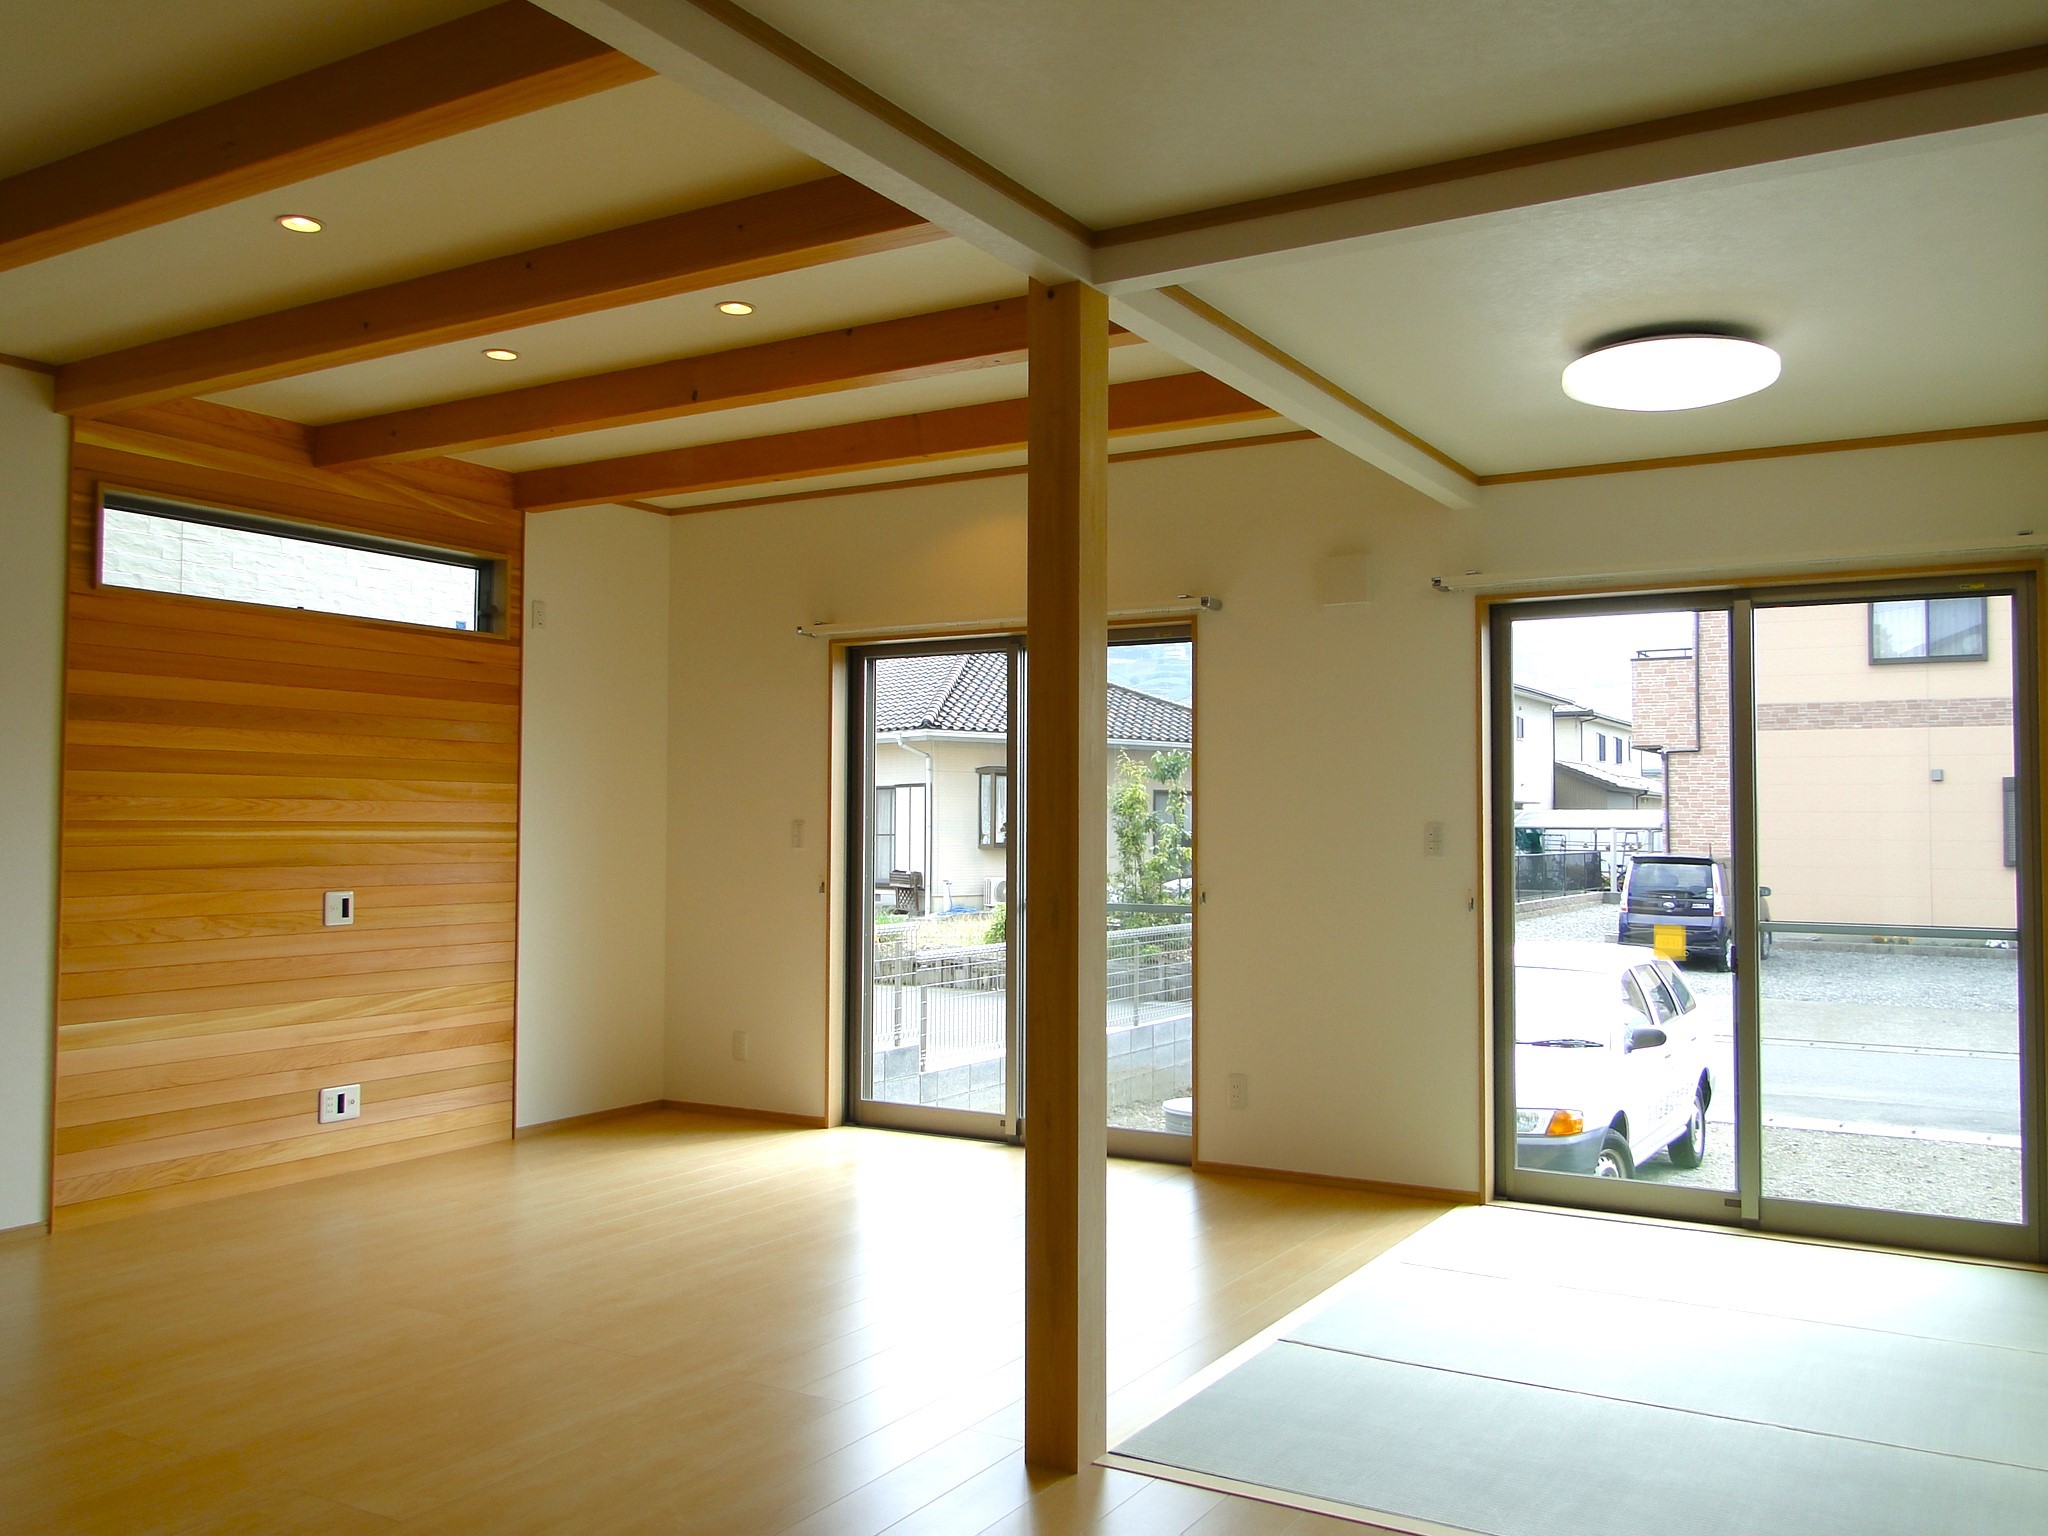 招き屋根で室内に明かりと空間を広くとれる家